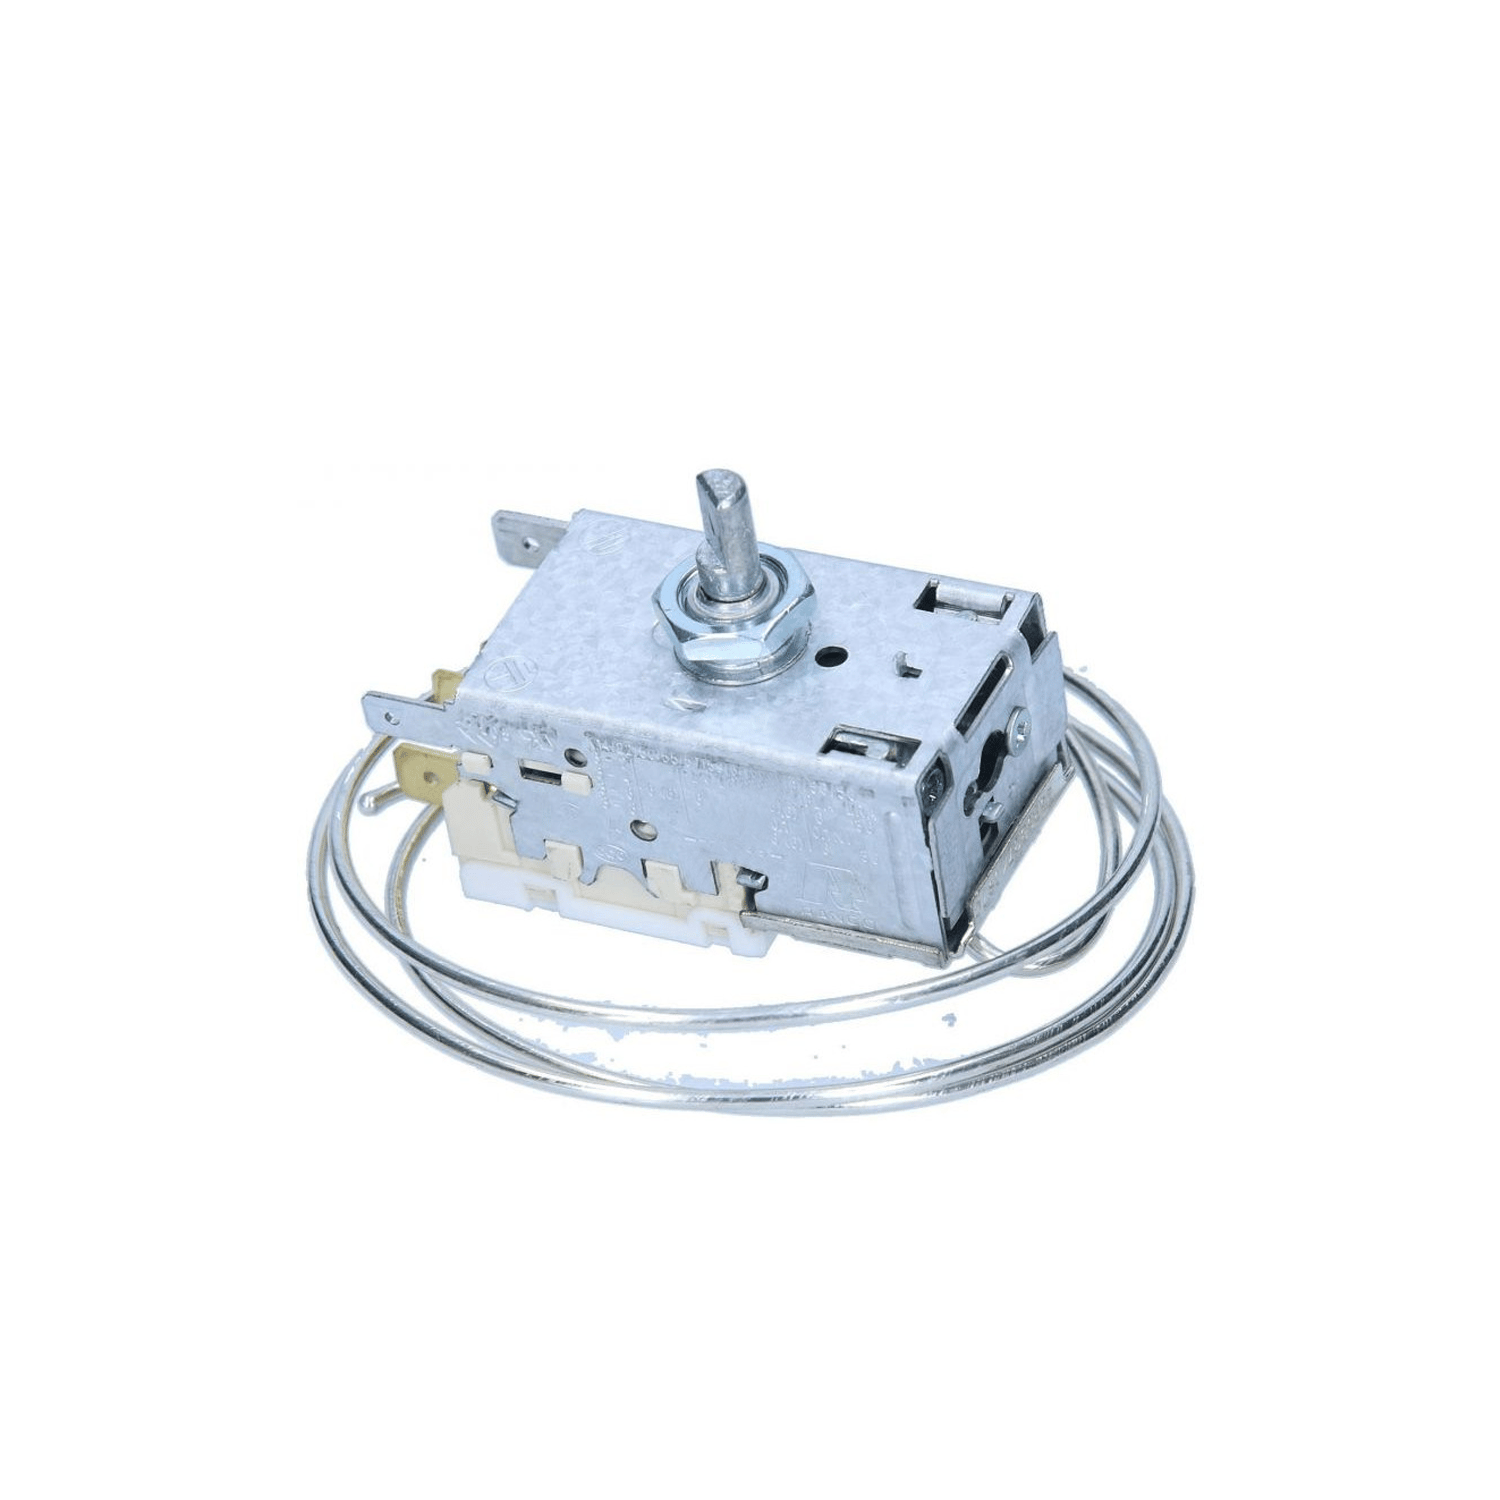 Thermostaat RANCO K59-L2678 voor koelkast AEG 2262136761, 6.3 mm Amp